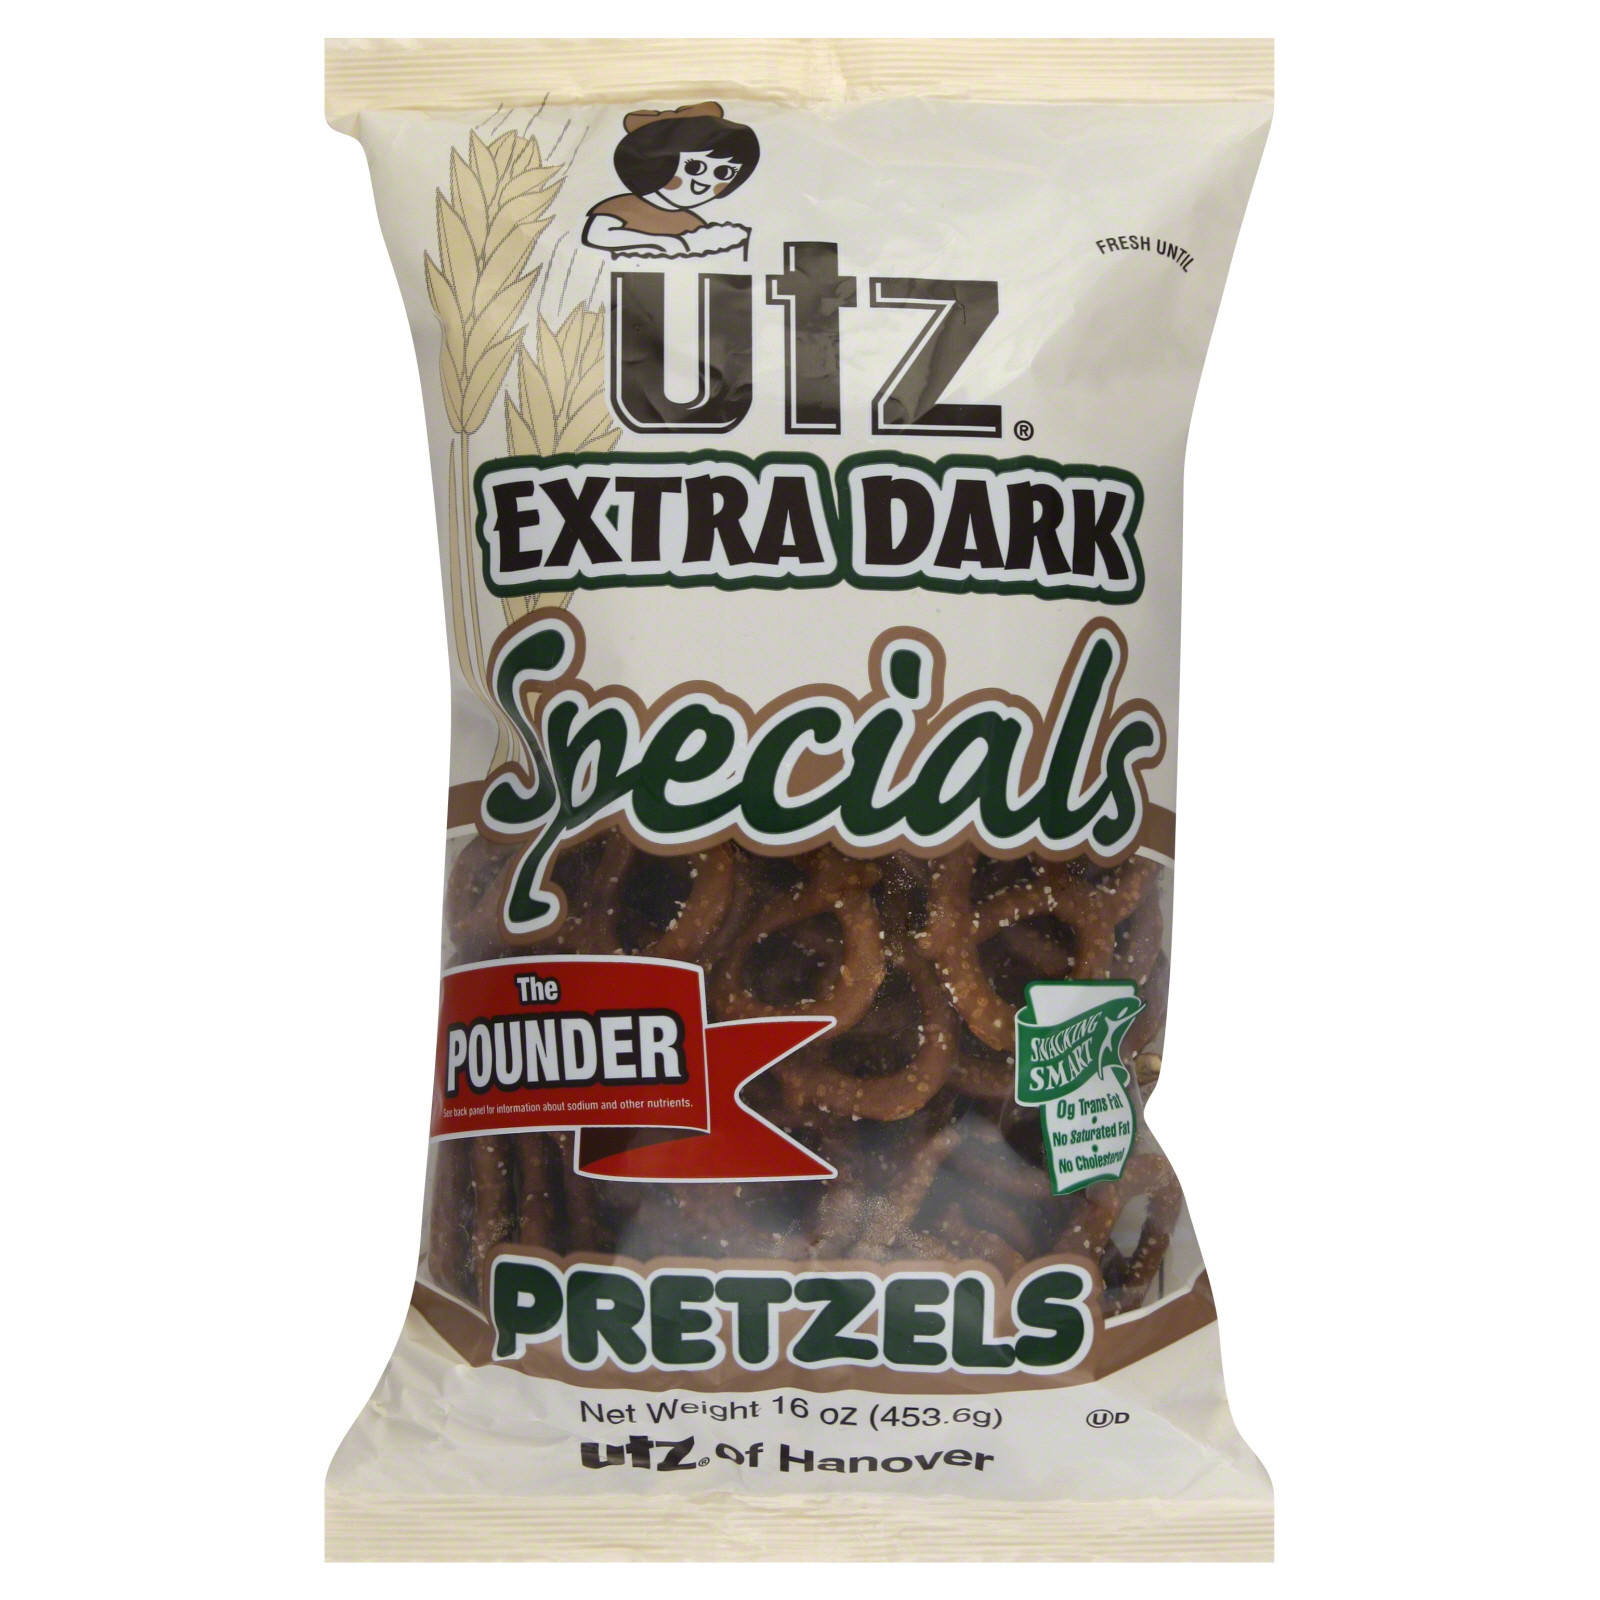 Utz Halloween Pretzels Nutrition Information
 Utz Specials Pretzels Extra Dark The Pounder 16 oz 453